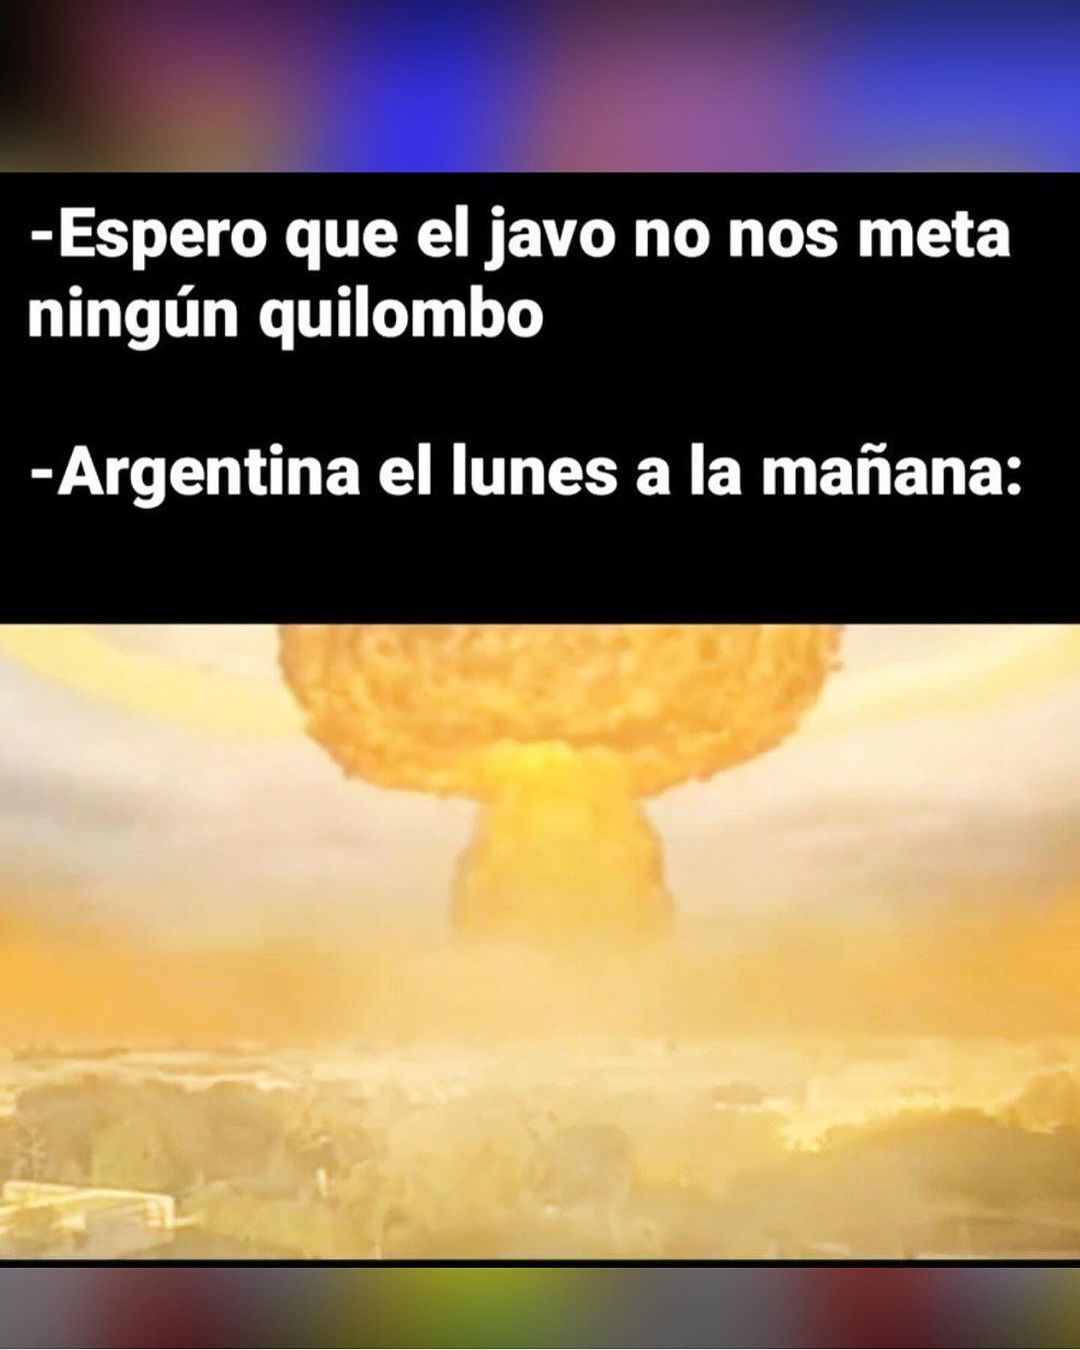 Conflicto en medio oriente, tercera guerra mundial y comité de crisis para esta fiesta de memes #LaPoliticaEnMemes #argentina #Memesargentina #peronismo #politica #cfk #massa #milei #viral #macri #humor #ucr (3)